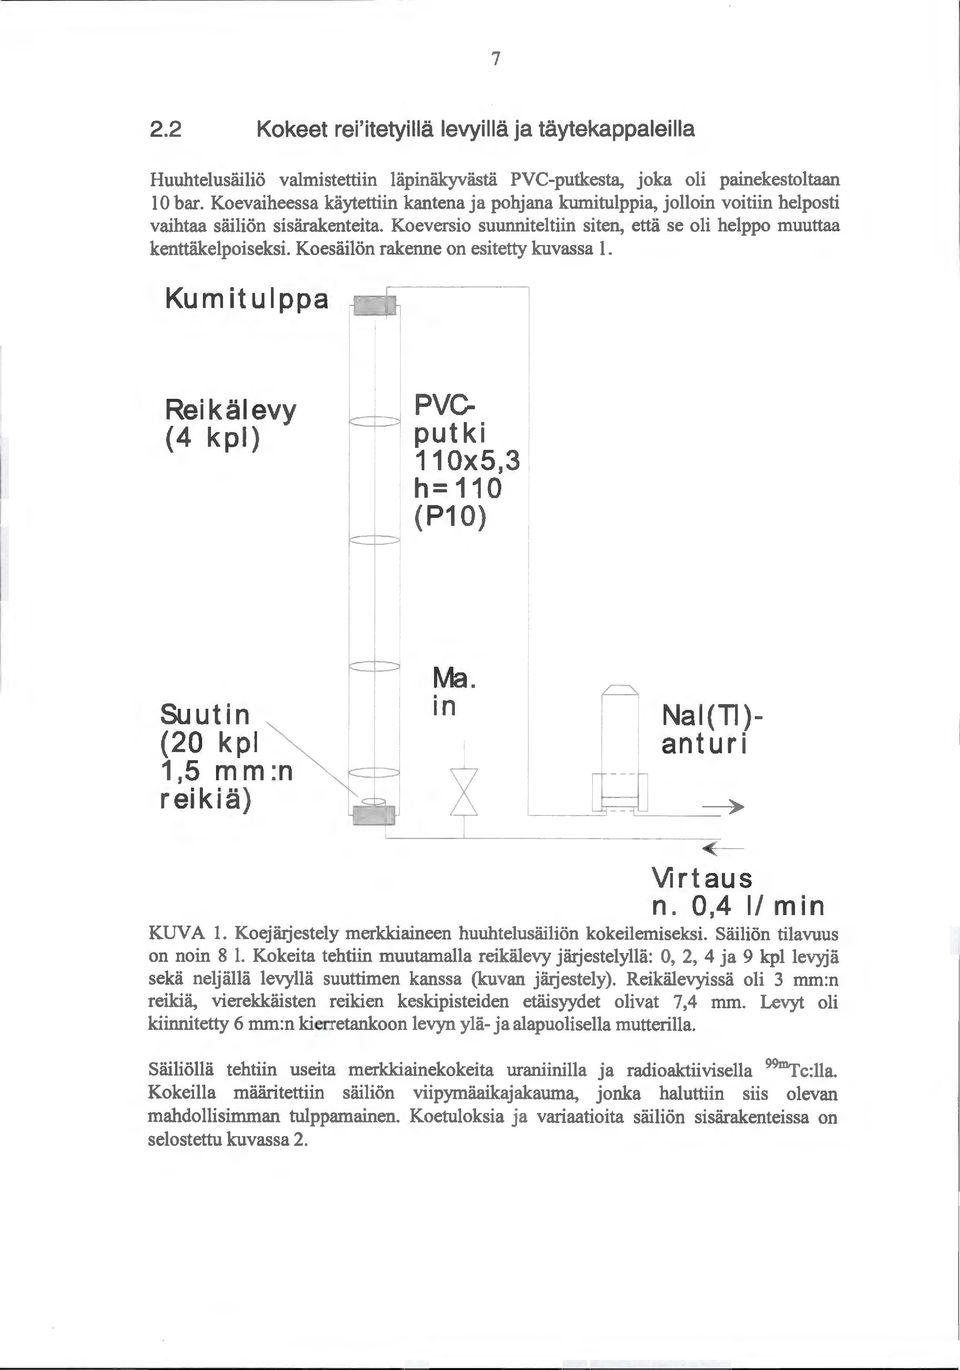 Koesäilän rakenne on esitetty kuvassa 1. Kum itulppa Reikälevy ( 4 k pl) PVCputki 11 Ox5,3 h= 110 (P1 0) Suutin (20 kpl 1,5 mm :n reikiä) Ma. in Nai(TI ) ant u r i L----~ ~ Virtaus n.